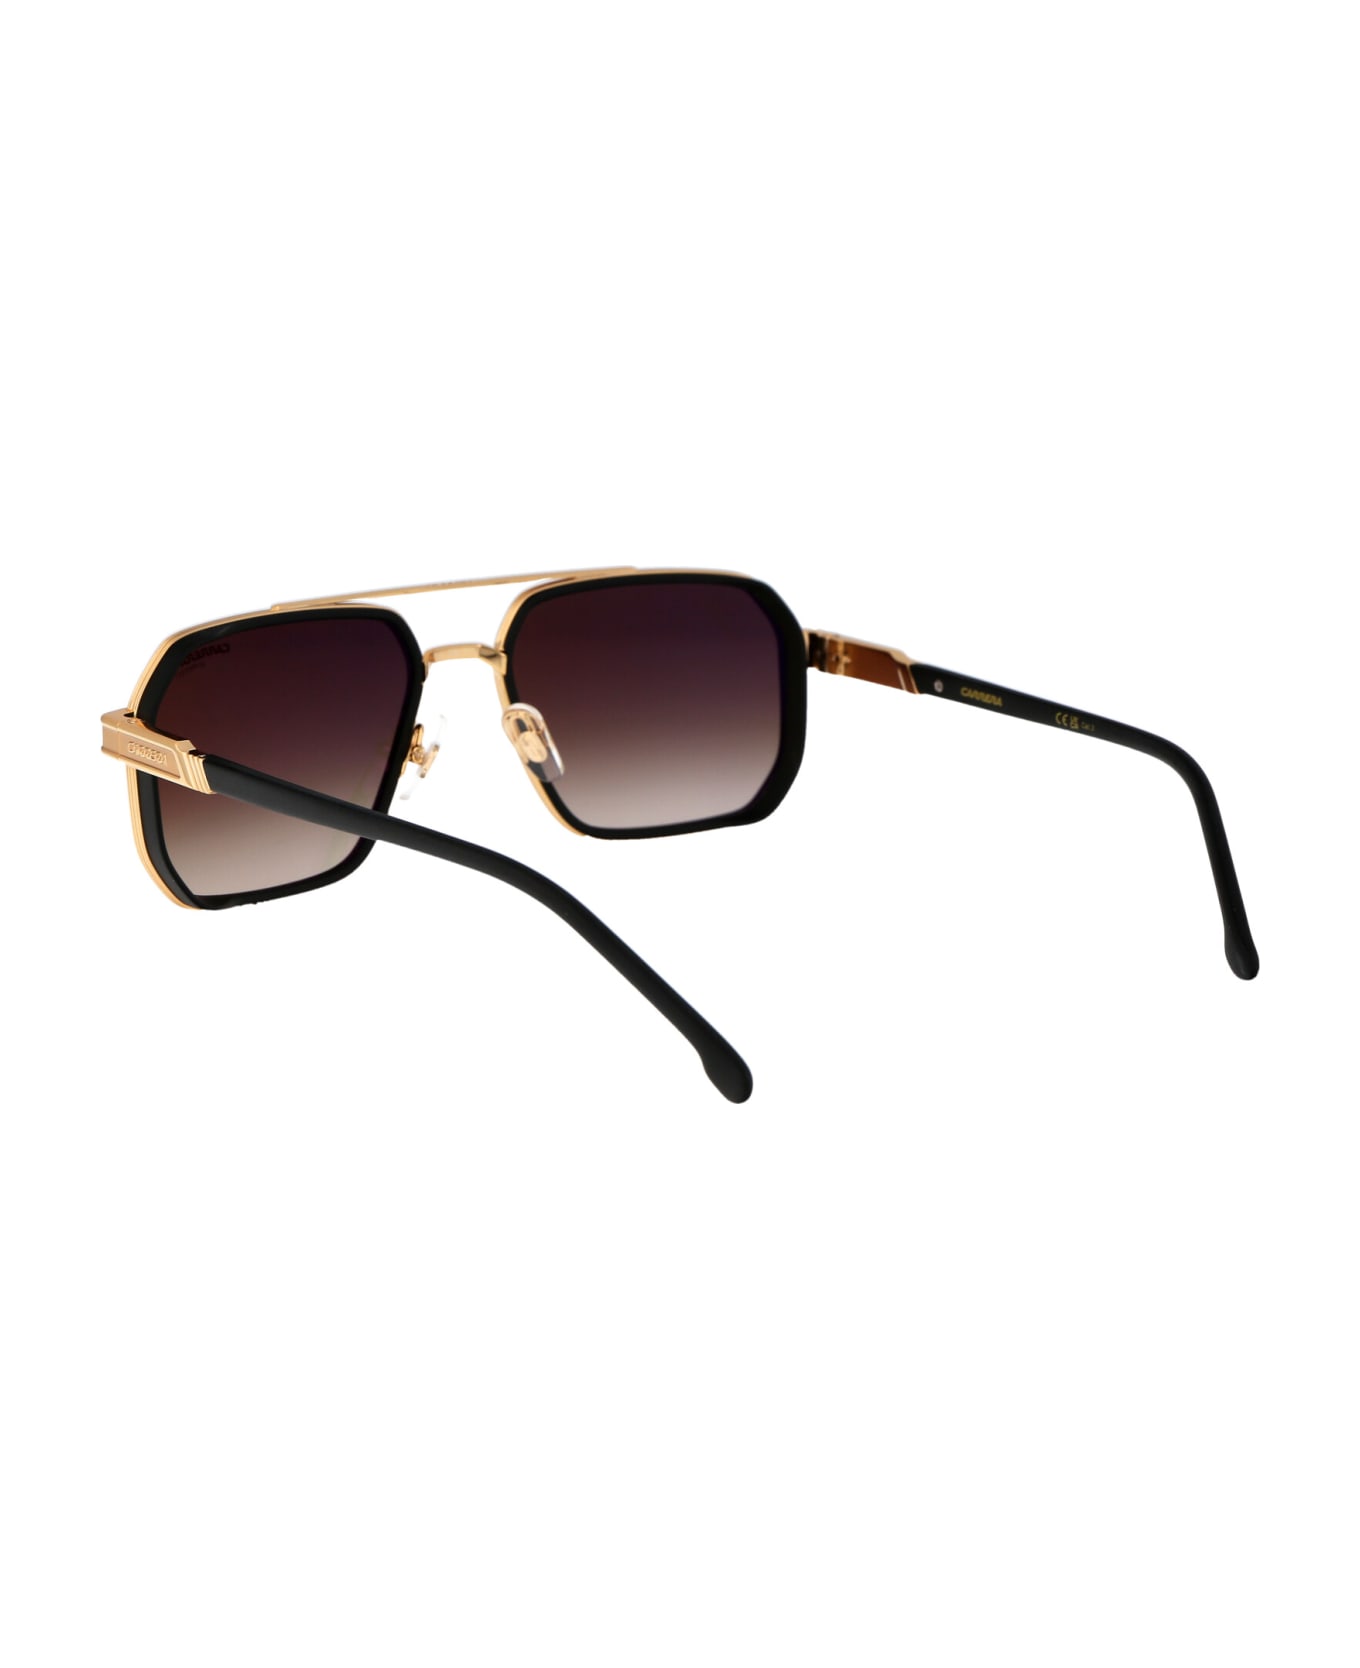 Carrera 1069/s Sunglasses - I4686 MT BK GD サングラス